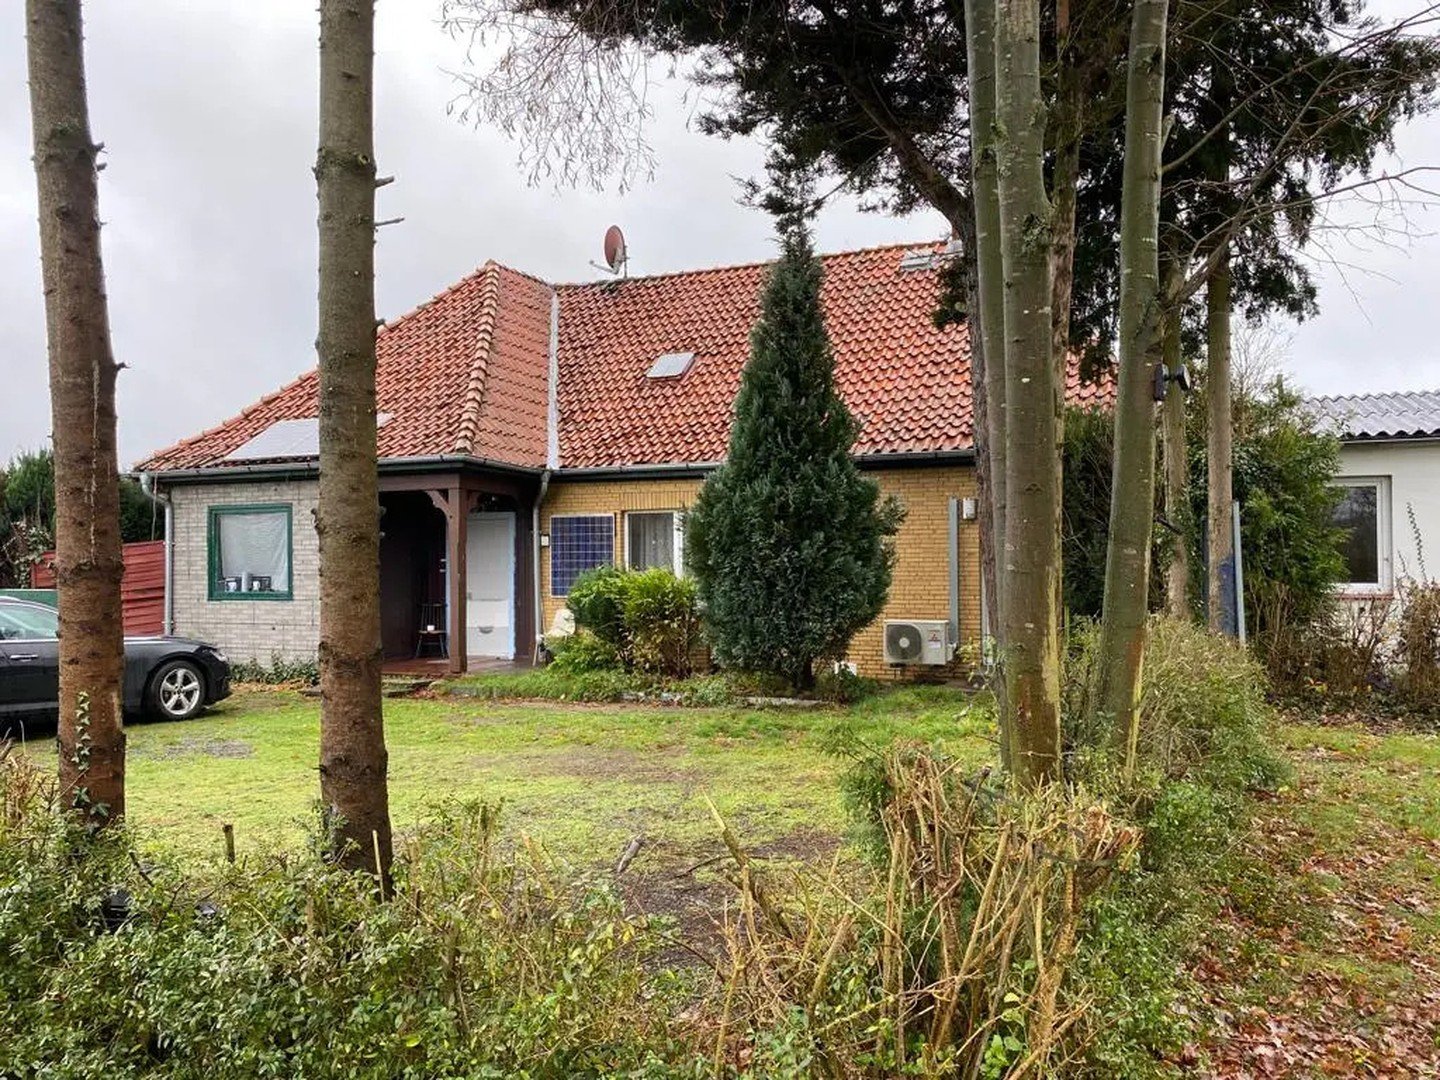 Keine Provision---Einfamilienhaus in Liebenau der Samtgemeinde Weser-Aue